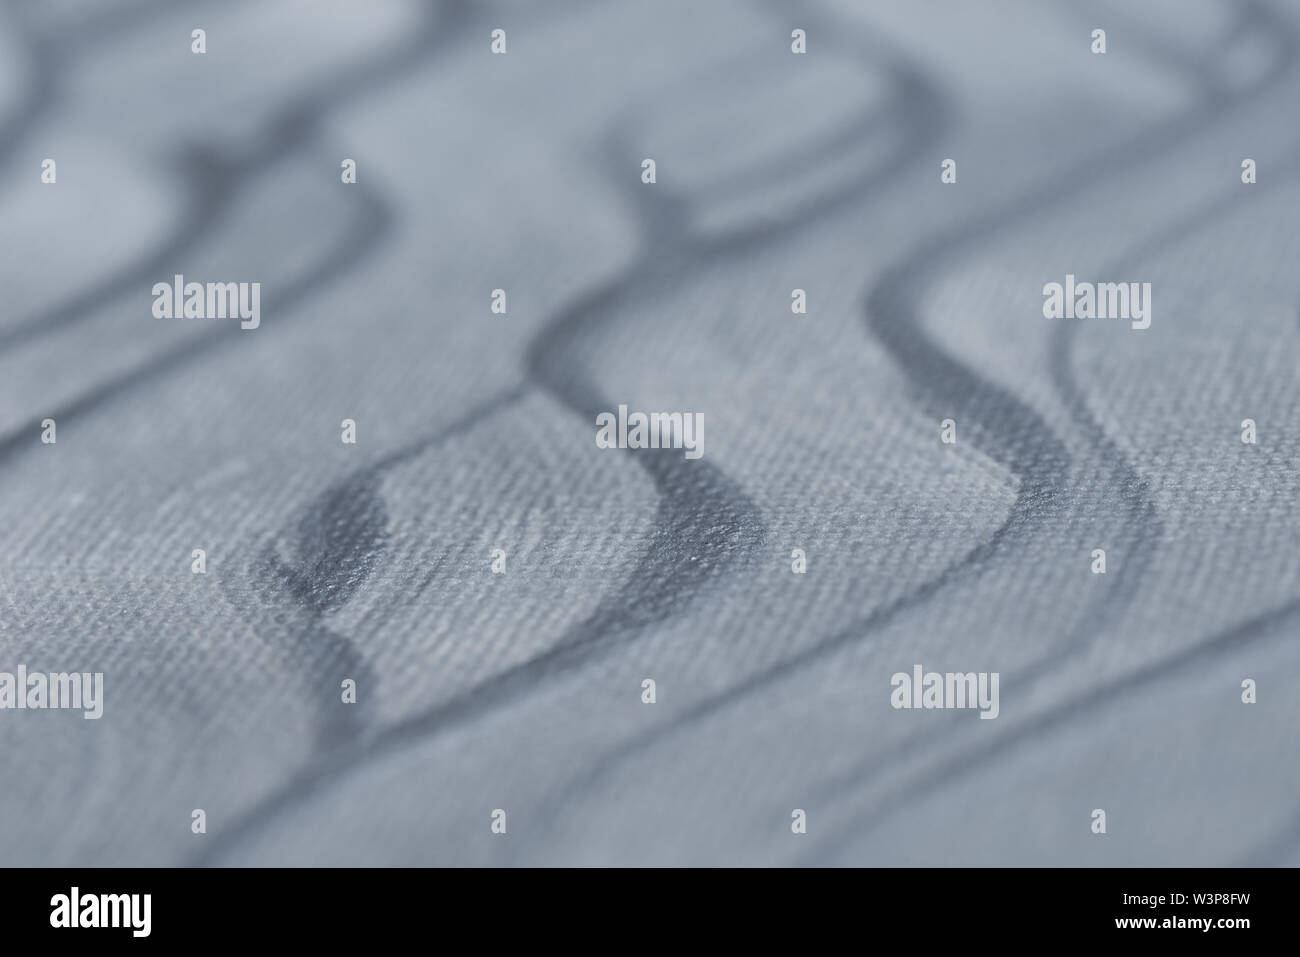 Farbe: Silber lackiert bacground Textur selektiven Fokus Stockfoto